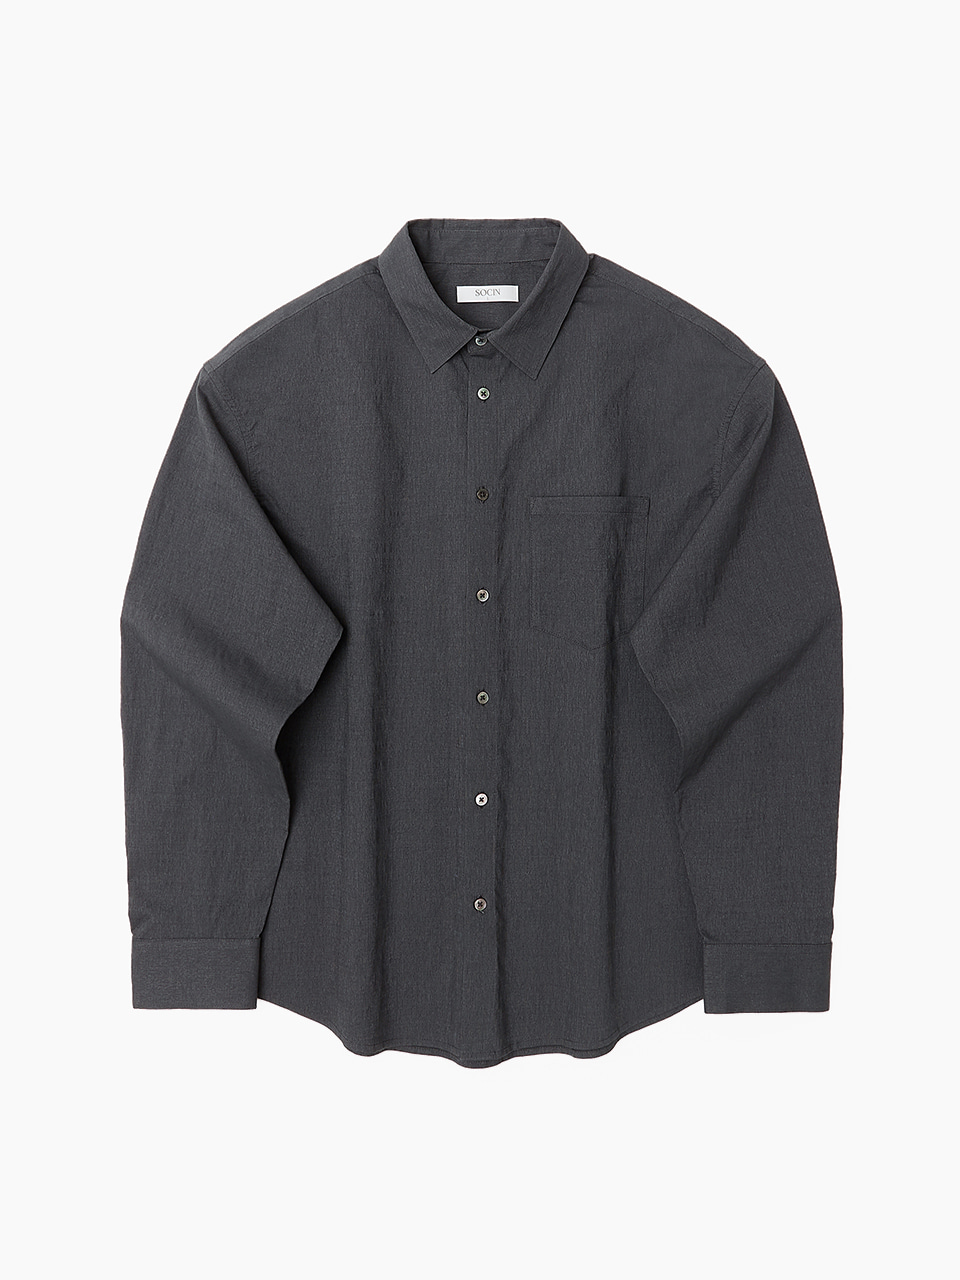 Micro Stripe Cotton Shirts (Charcoal)